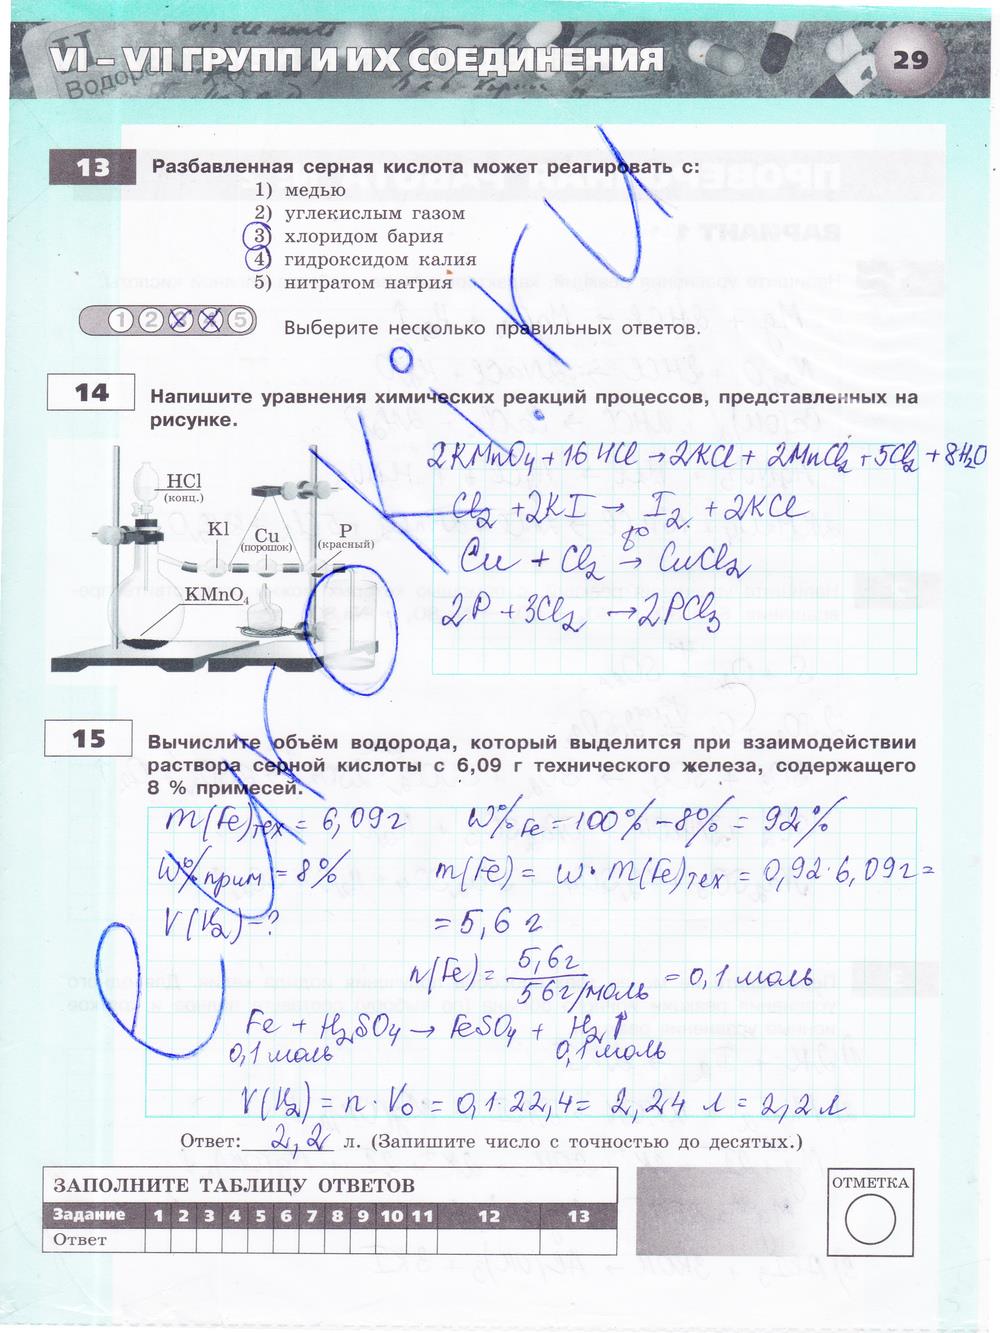 гдз 9 класс тетрадь-экзаменатор страница 29 химия Бобылева, Бирюлина